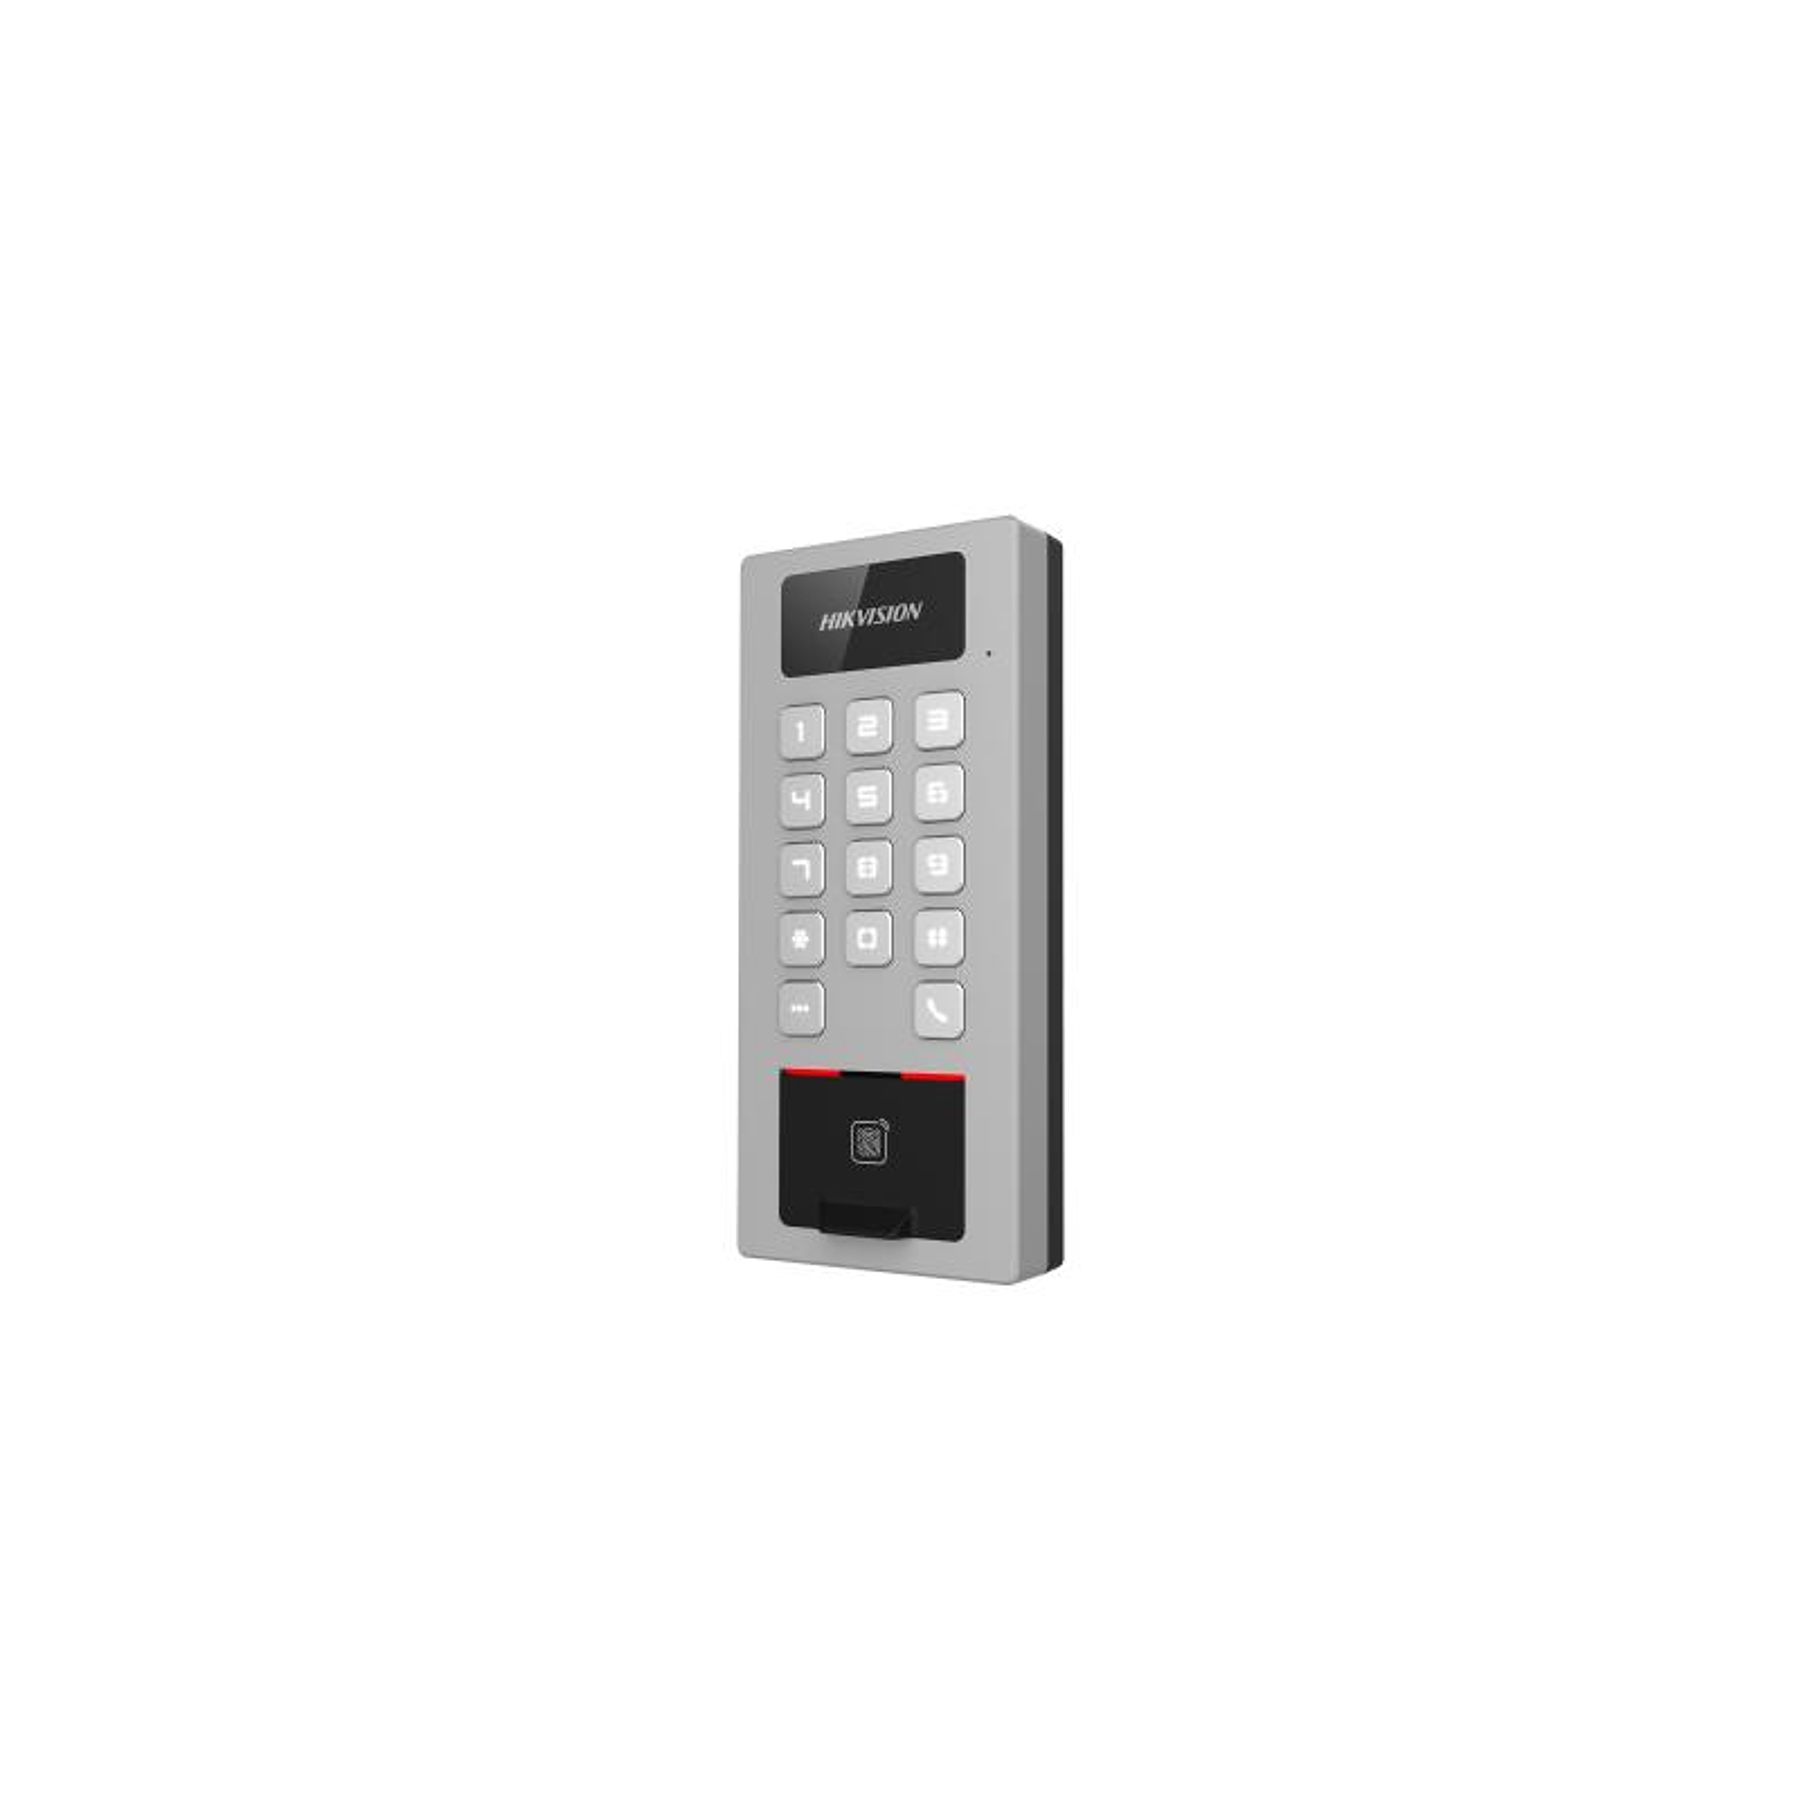 Hikvision DS-K1T502DBFWX Terminal Control de Acceso Lector de Huellas y Cámara Lector RFID